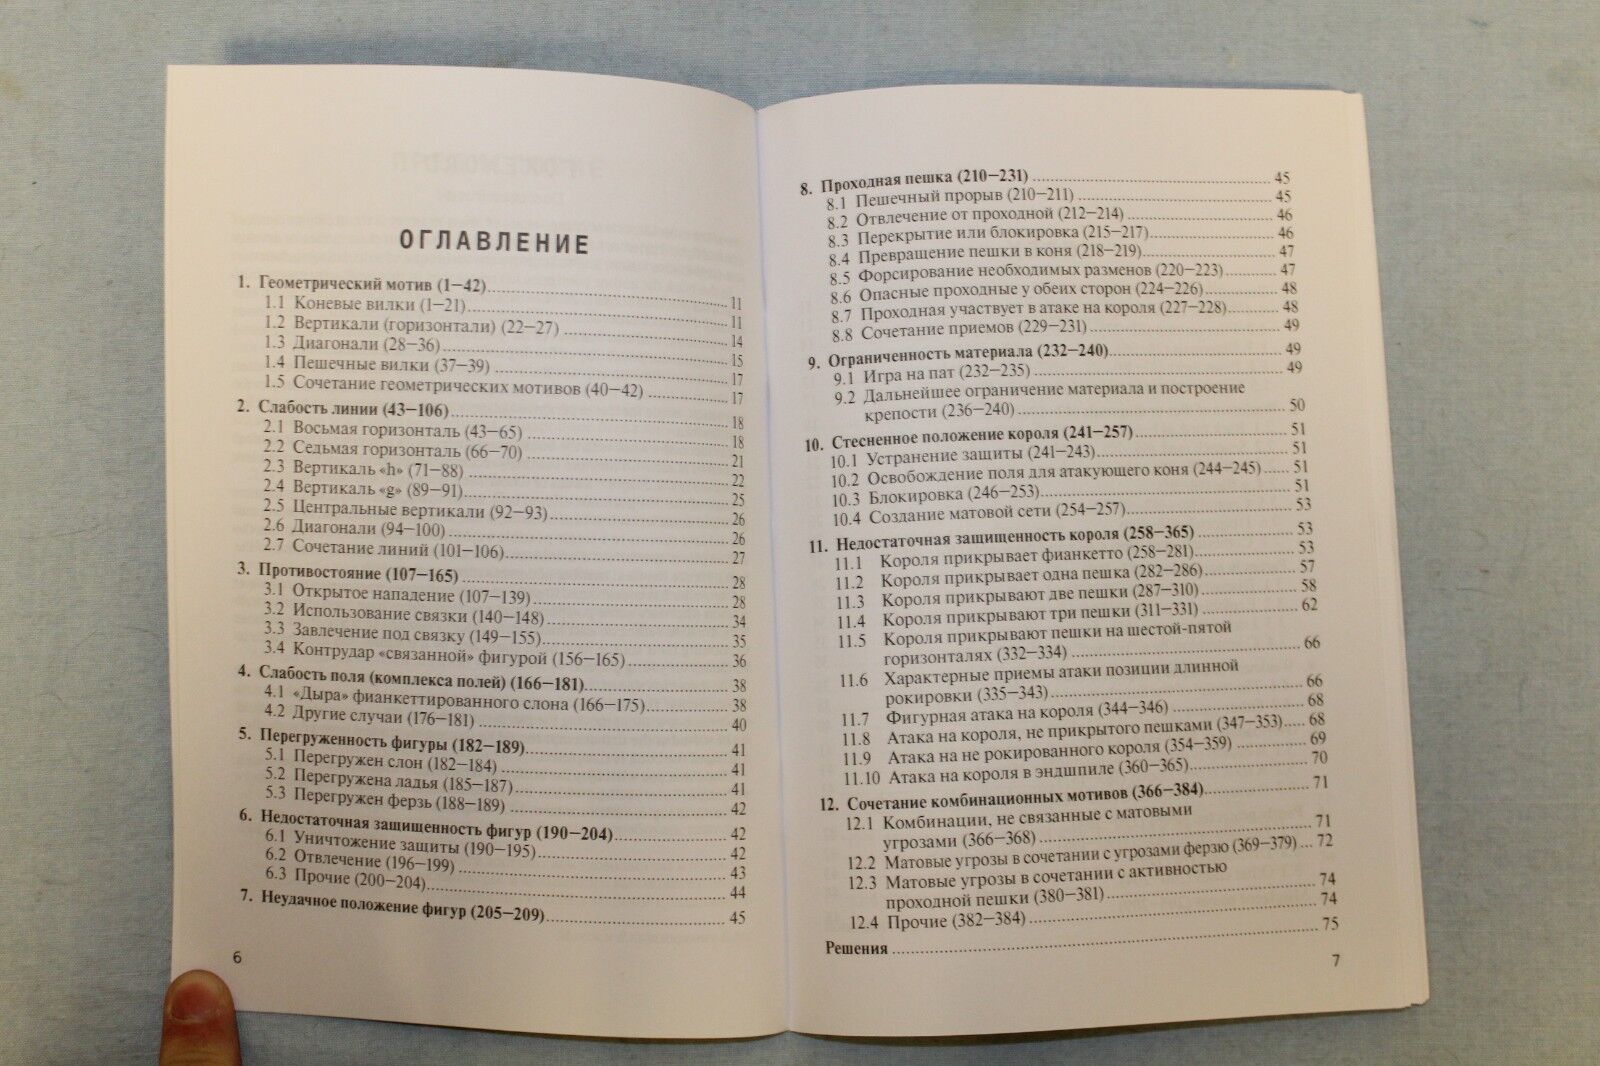 11274.English German Russian Chess Book: M. Blokh. 600 Combinations. Kombinationen